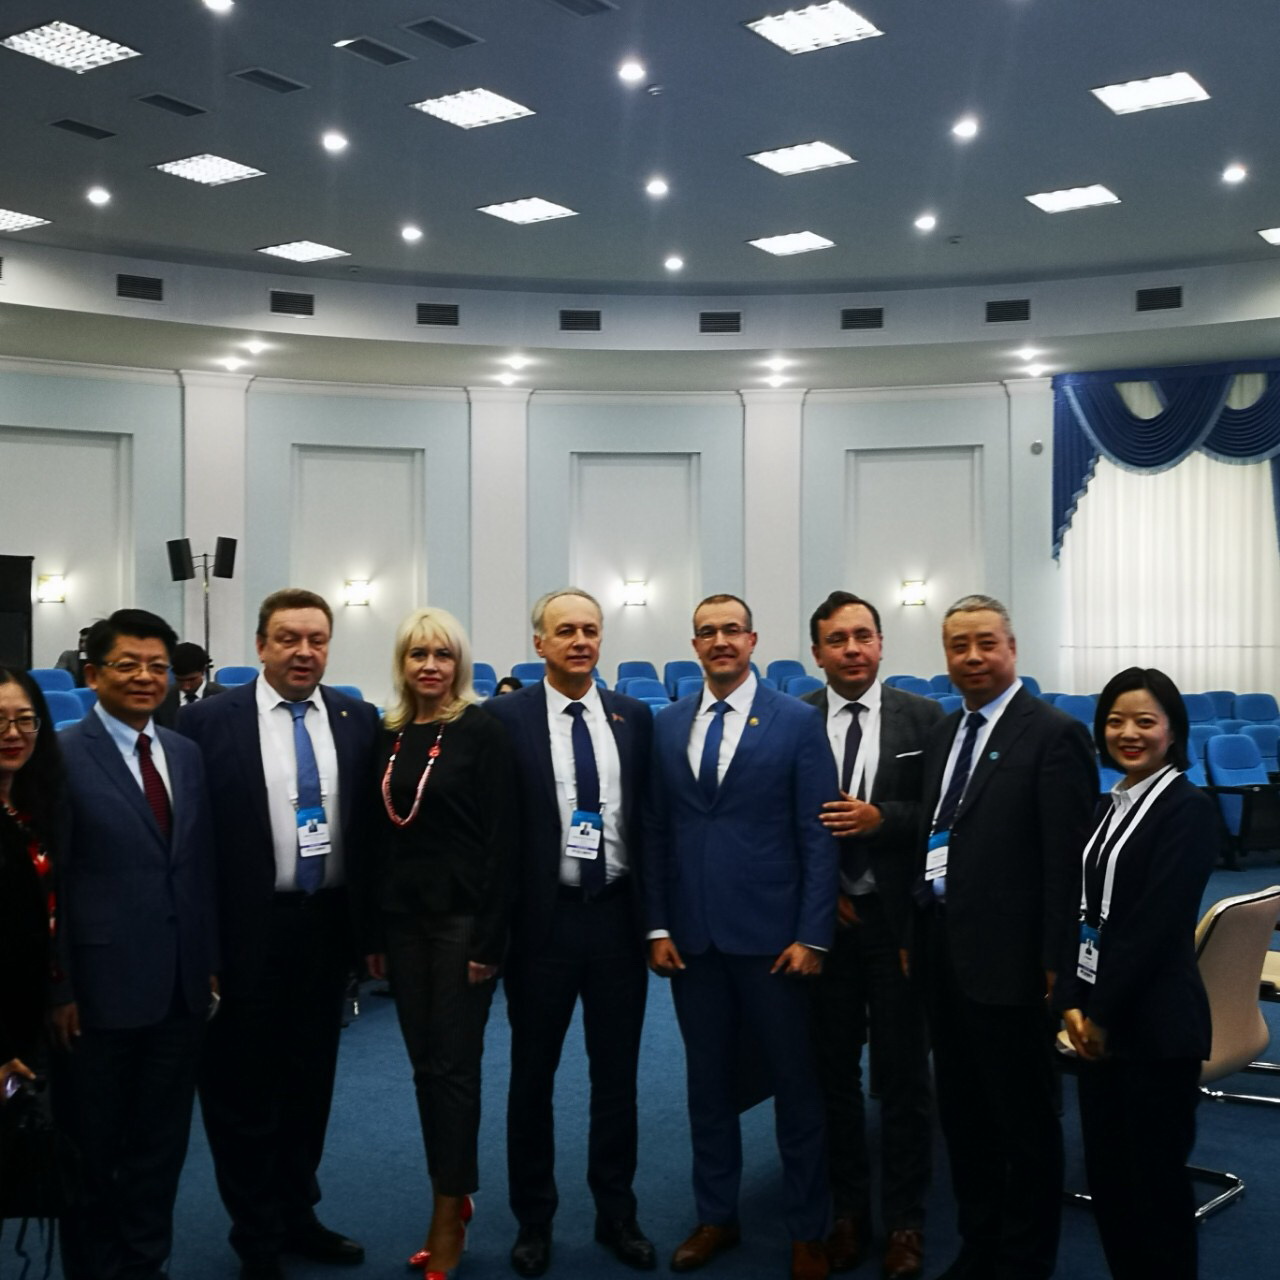 Cоглашение о сотрудничестве подписали адвокатуры Беларуси и Узбекистана